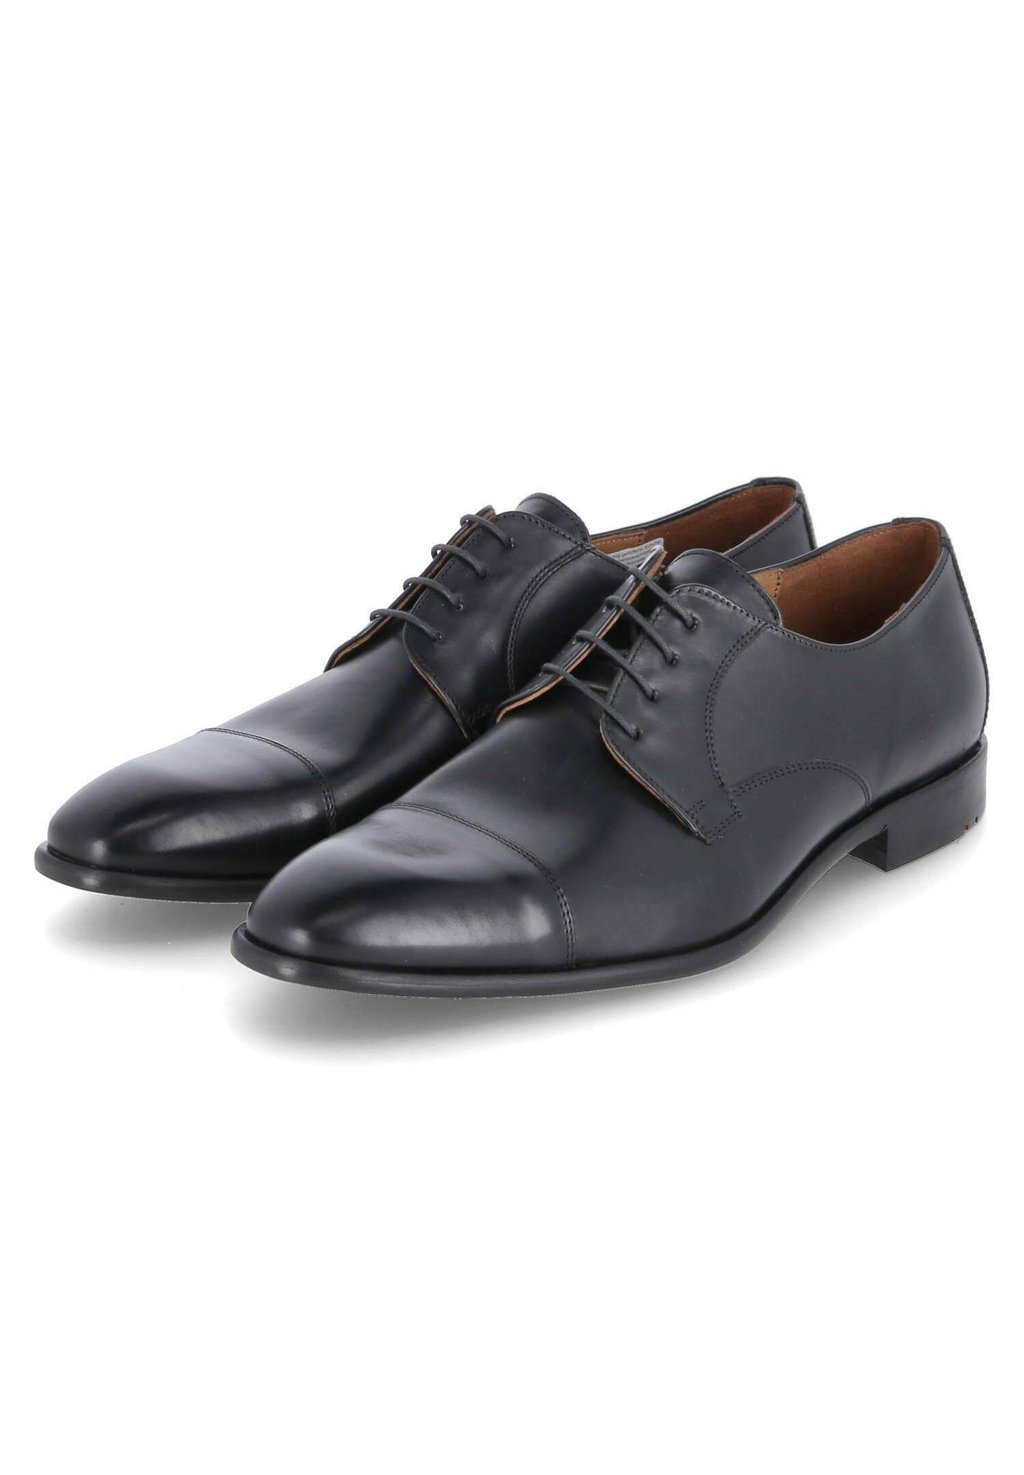 Элегантные туфли на шнуровке Newport Lloyd, цвет schwarz